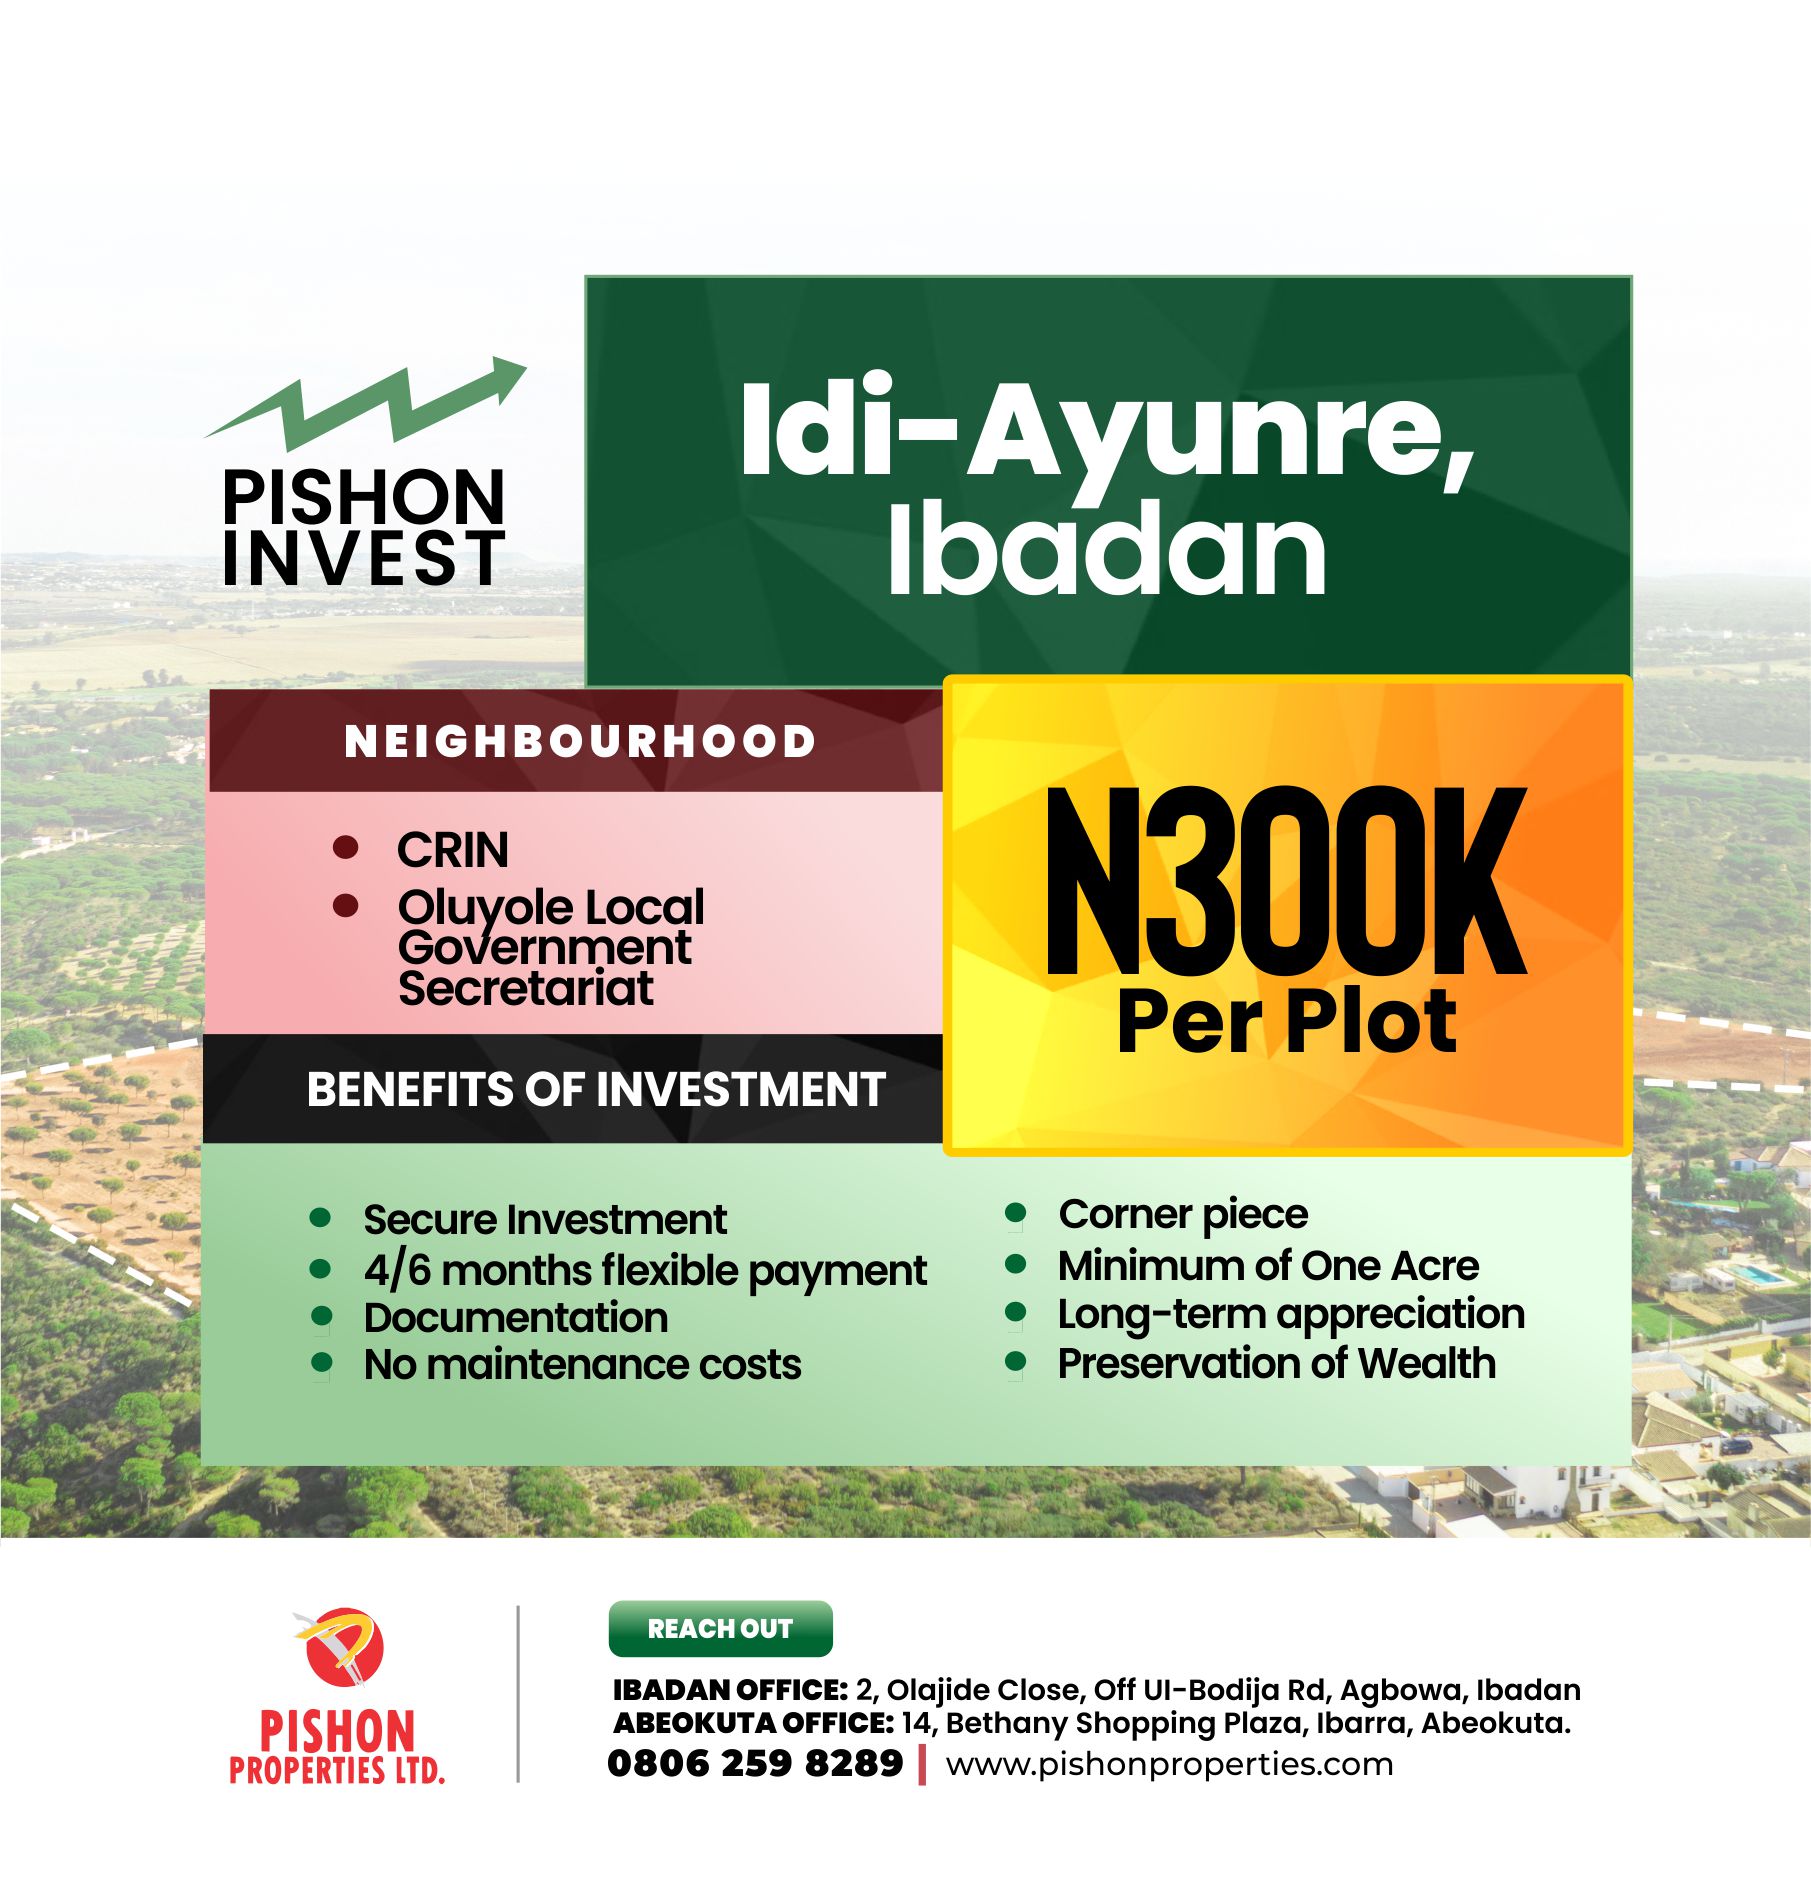 Land Banking in Idi-Ayunre Ibadan